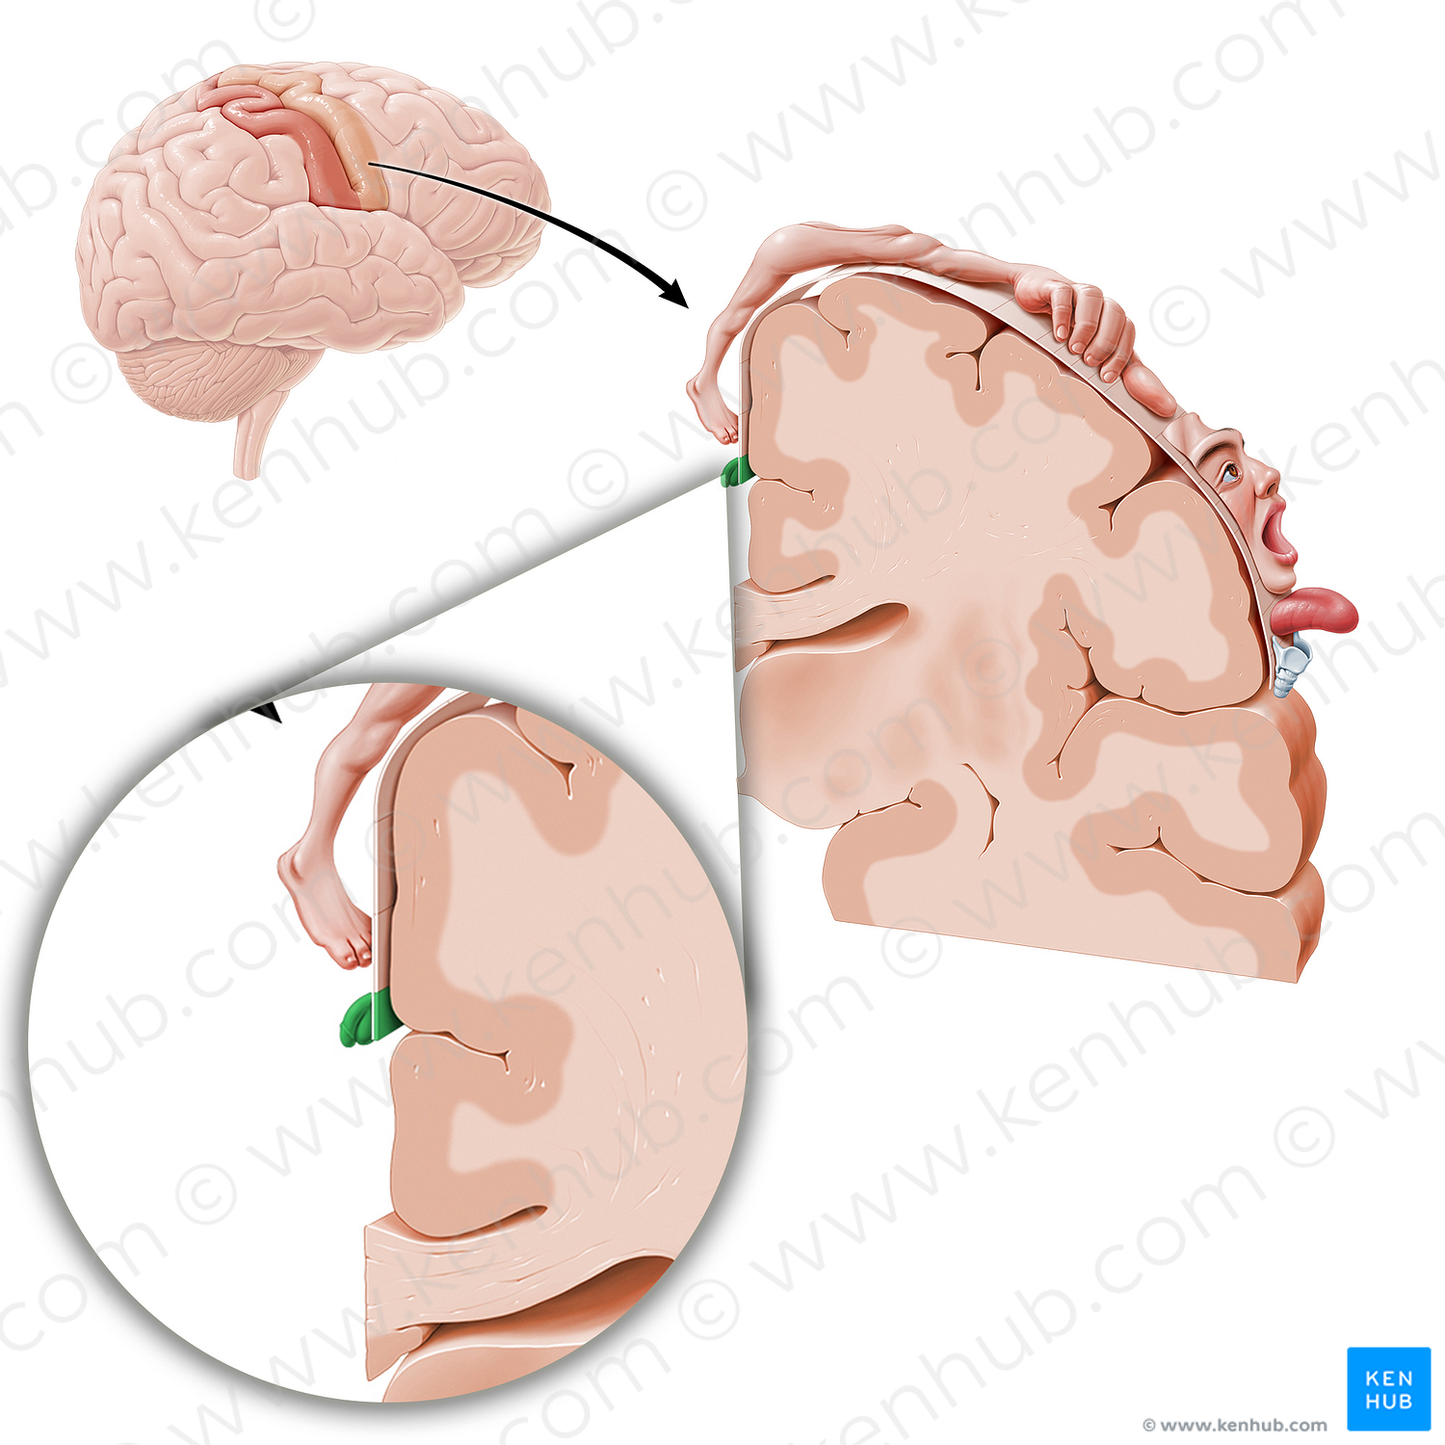 Motor cortex of genitals (#11073)